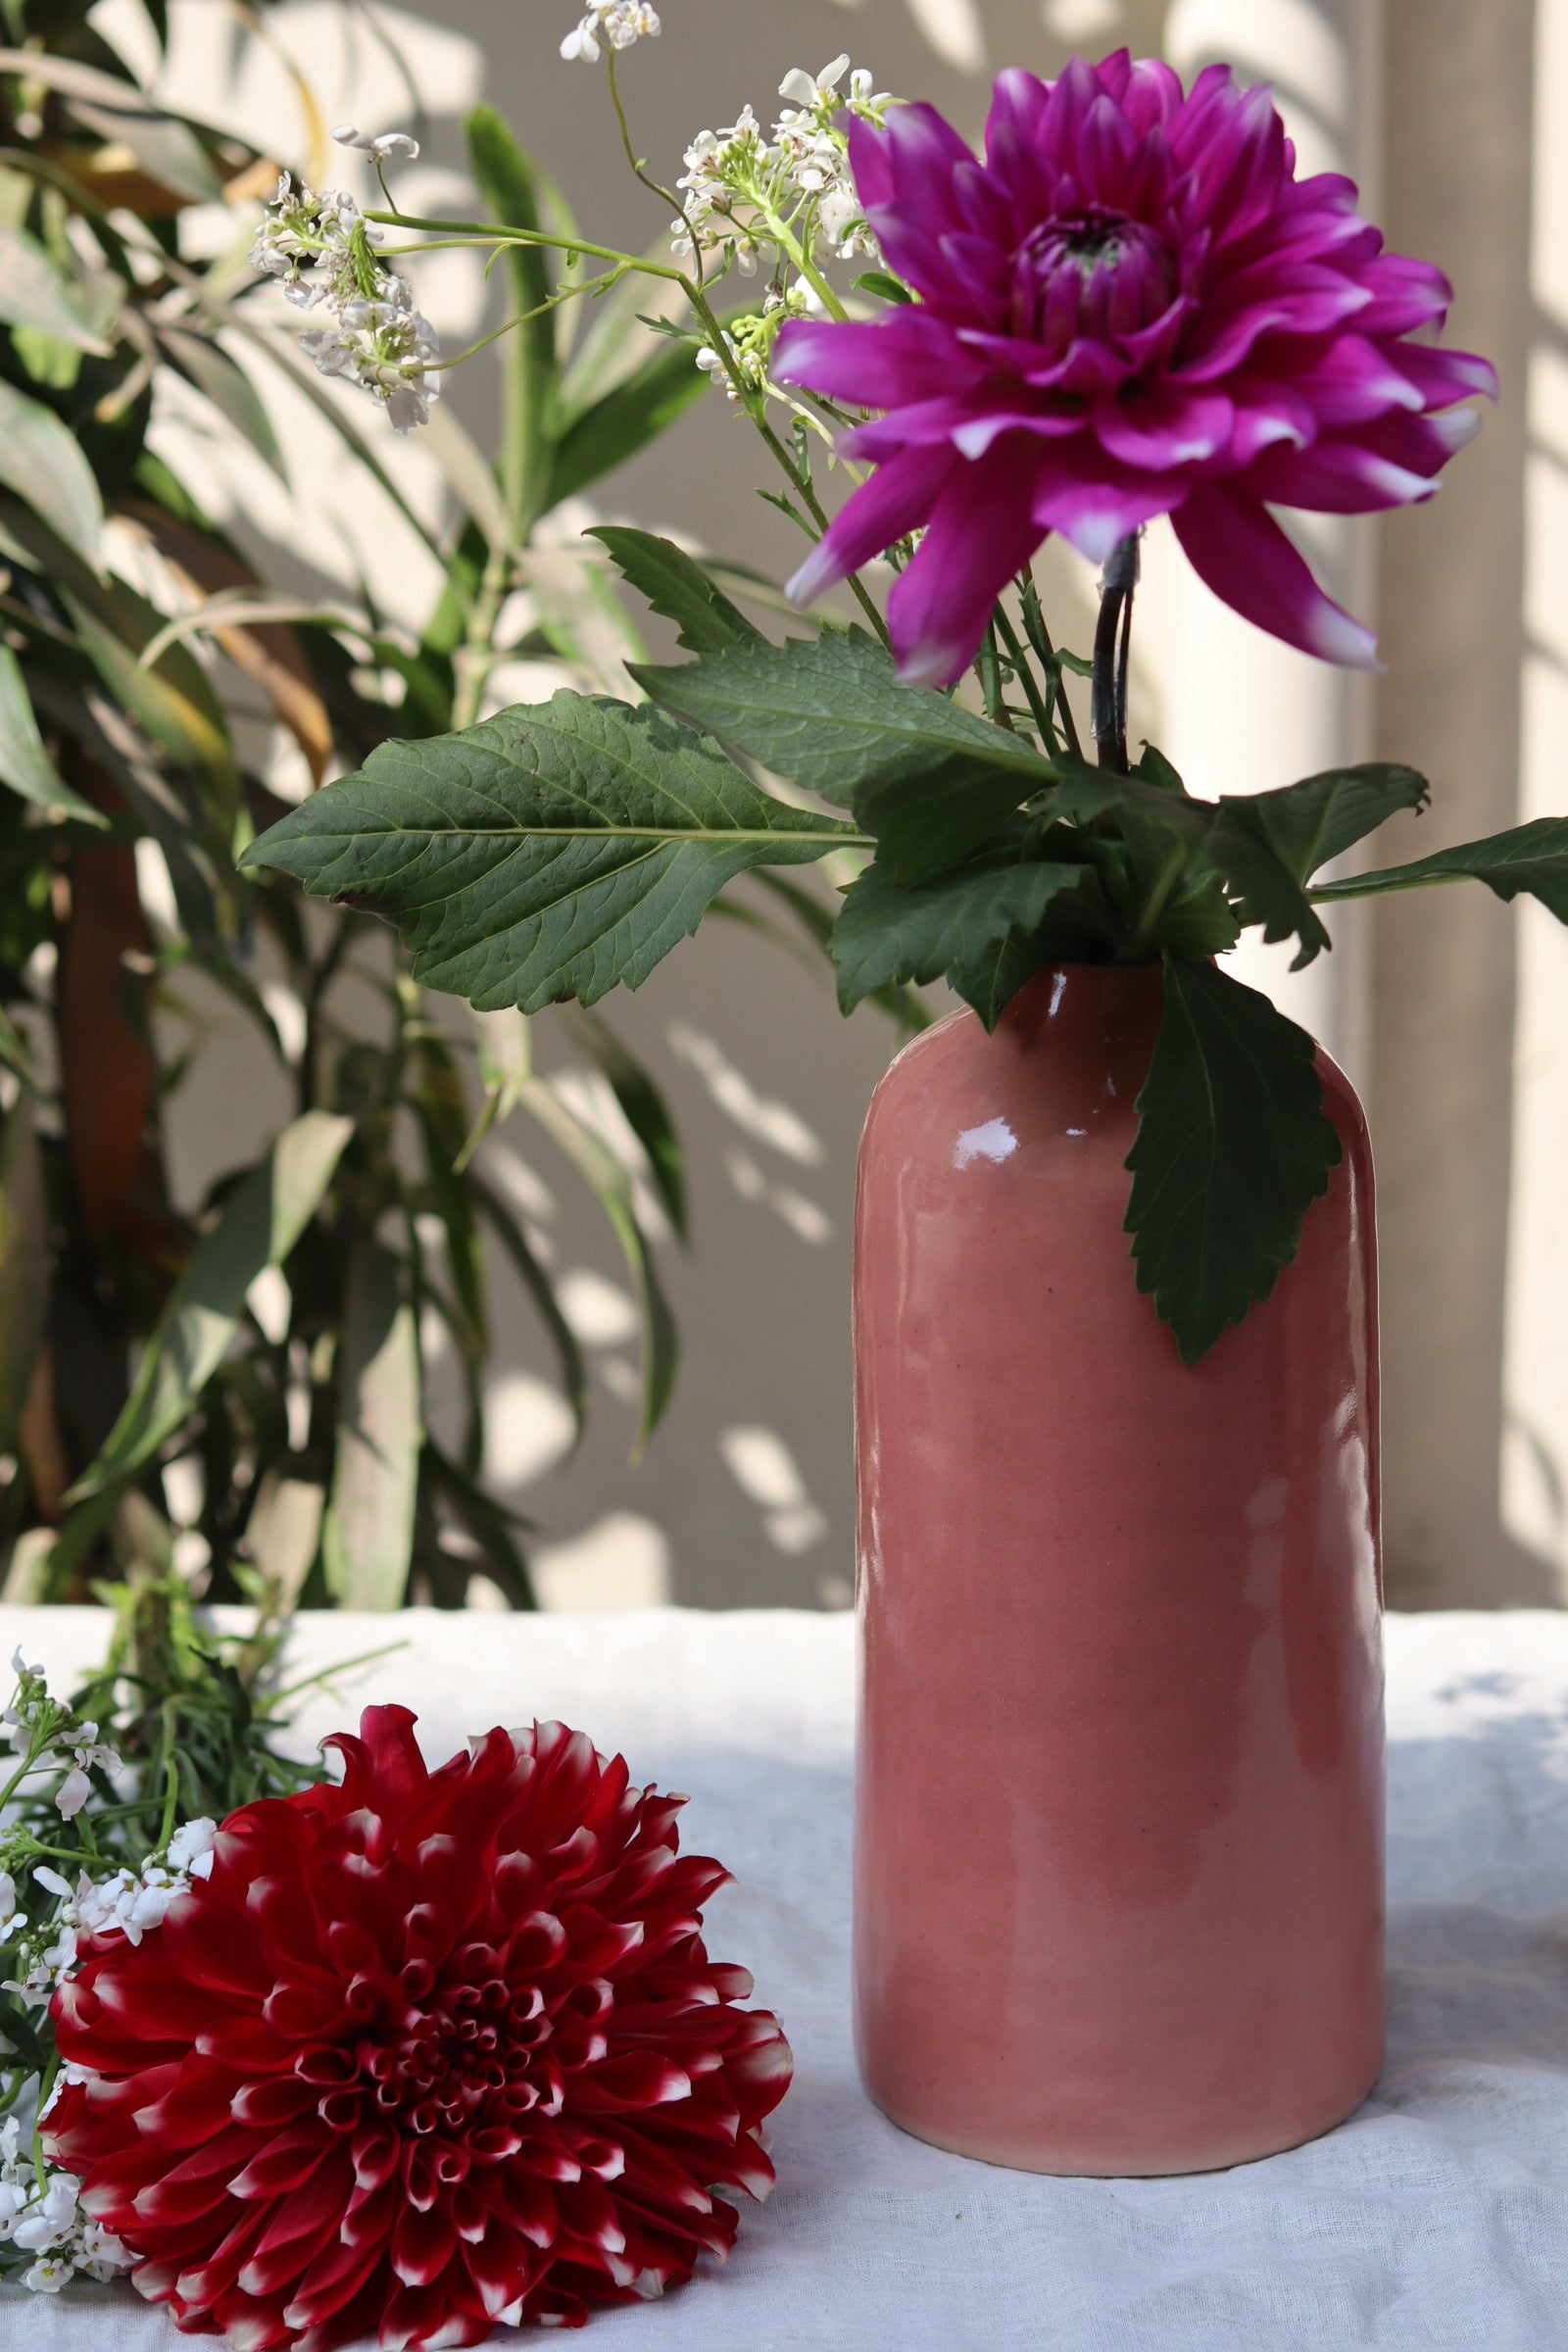 Handmade ceramic flower vase with flower